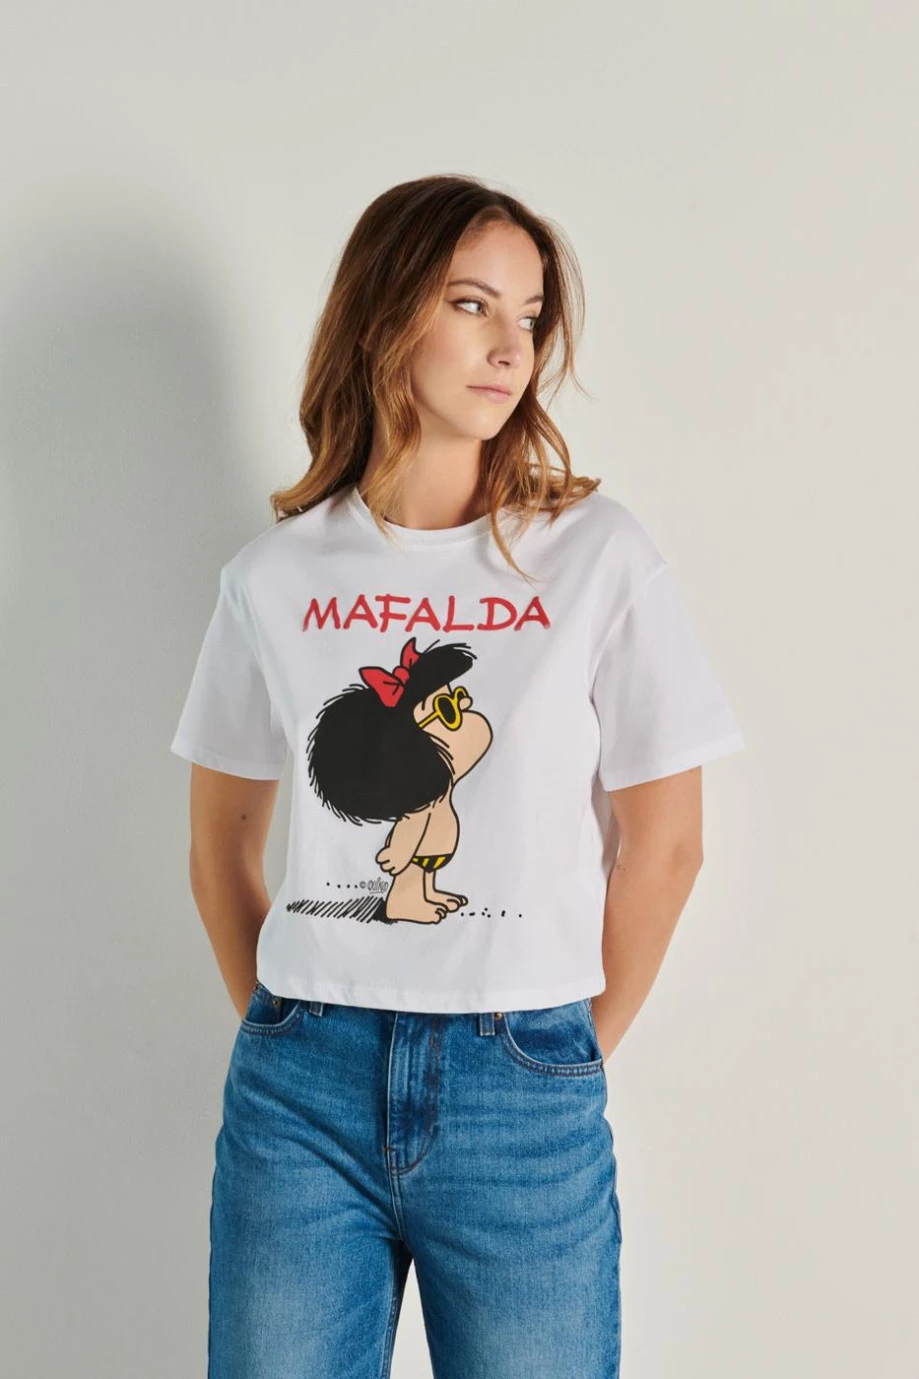 Camiseta crop top crema clara con diseño de Mafalda y manga corta